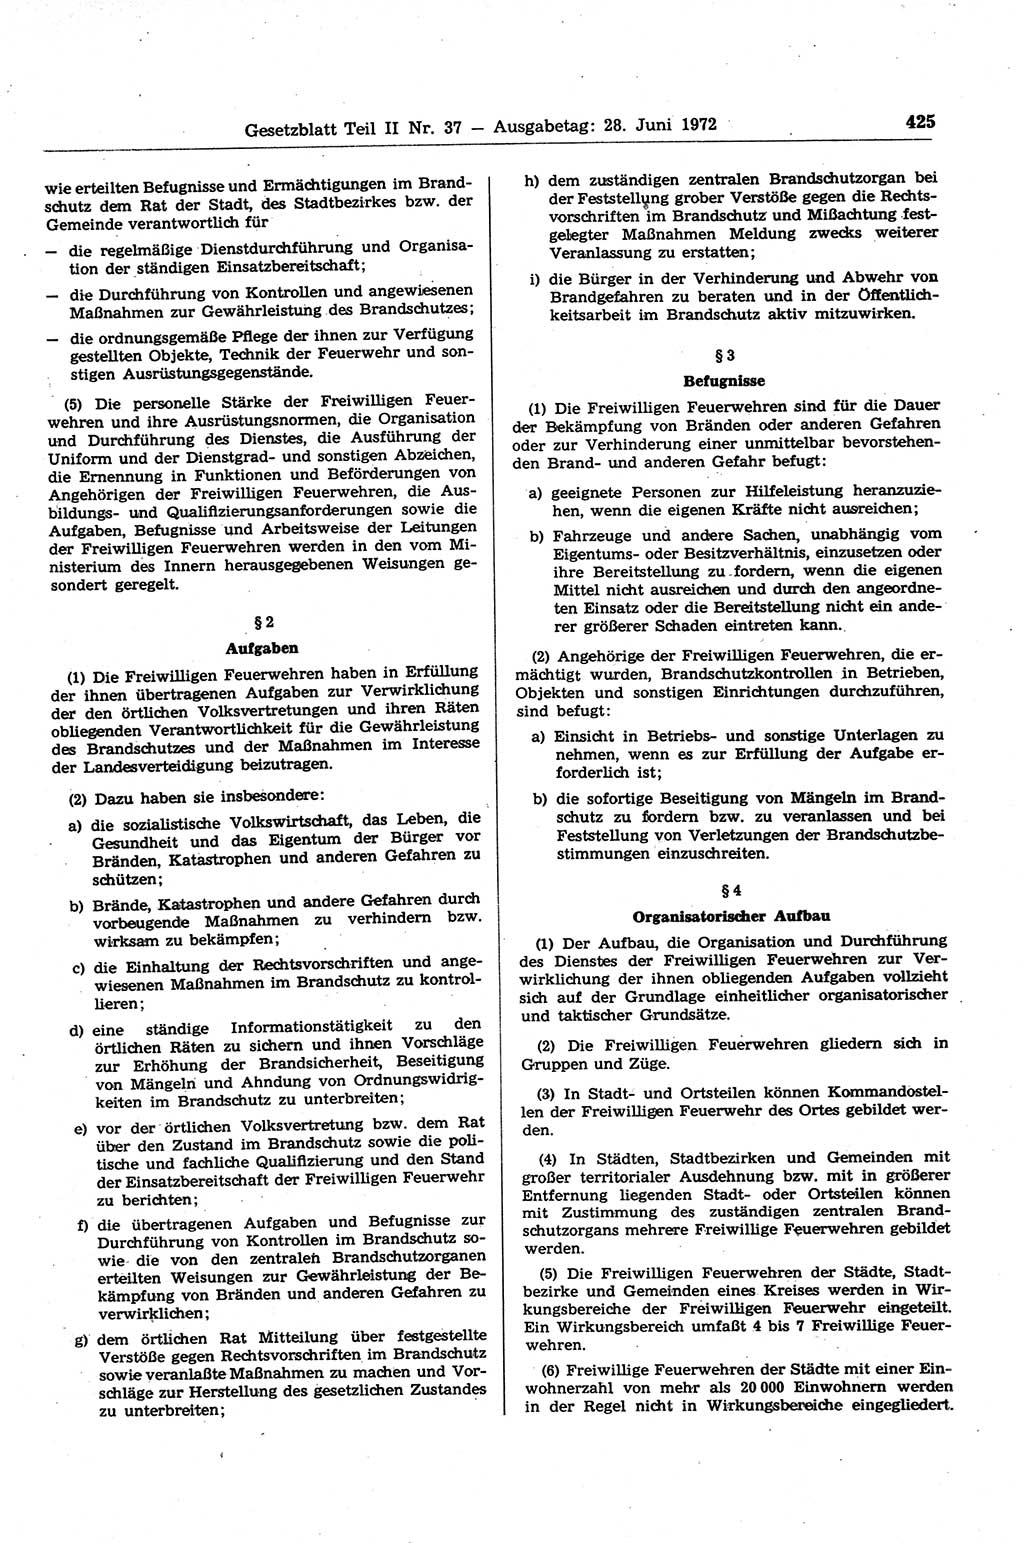 Gesetzblatt (GBl.) der Deutschen Demokratischen Republik (DDR) Teil ⅠⅠ 1972, Seite 425 (GBl. DDR ⅠⅠ 1972, S. 425)